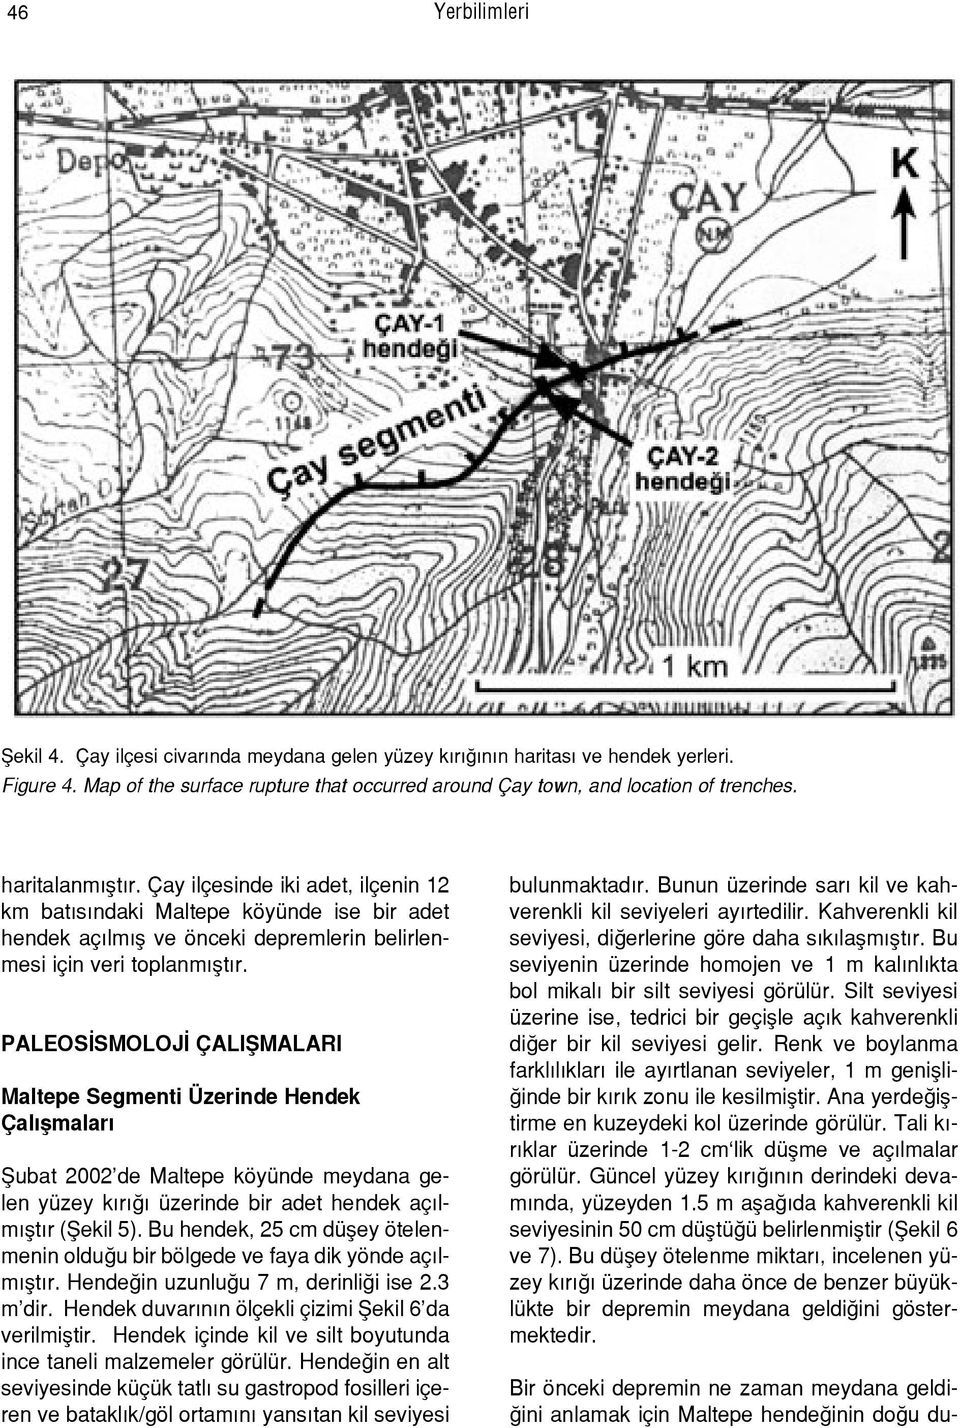 PALEOS SMOLOJ ÇALIfiMALARI Maltepe Segmenti Üzerinde Hendek Çal flmalar fiubat 2002 de Maltepe köyünde meydana gelen yüzey k r üzerinde bir adet hendek aç lm flt r (fiekil 5).